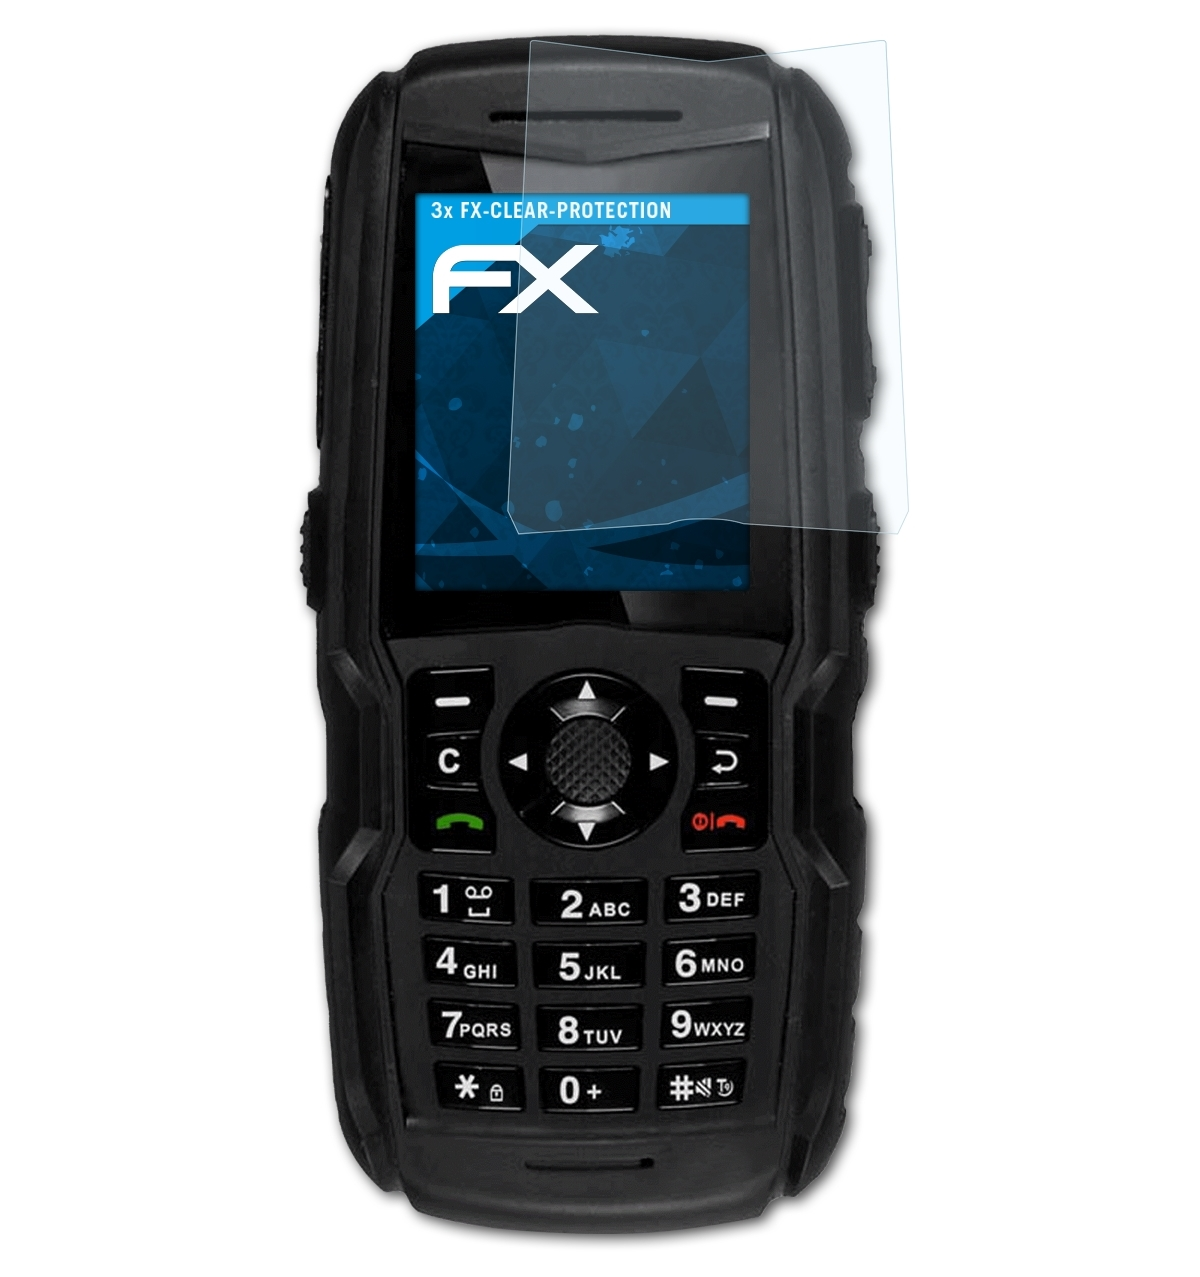 ATFOLIX 3G) 3x XP5300 Displayschutz(für Sonim FX-Clear Force